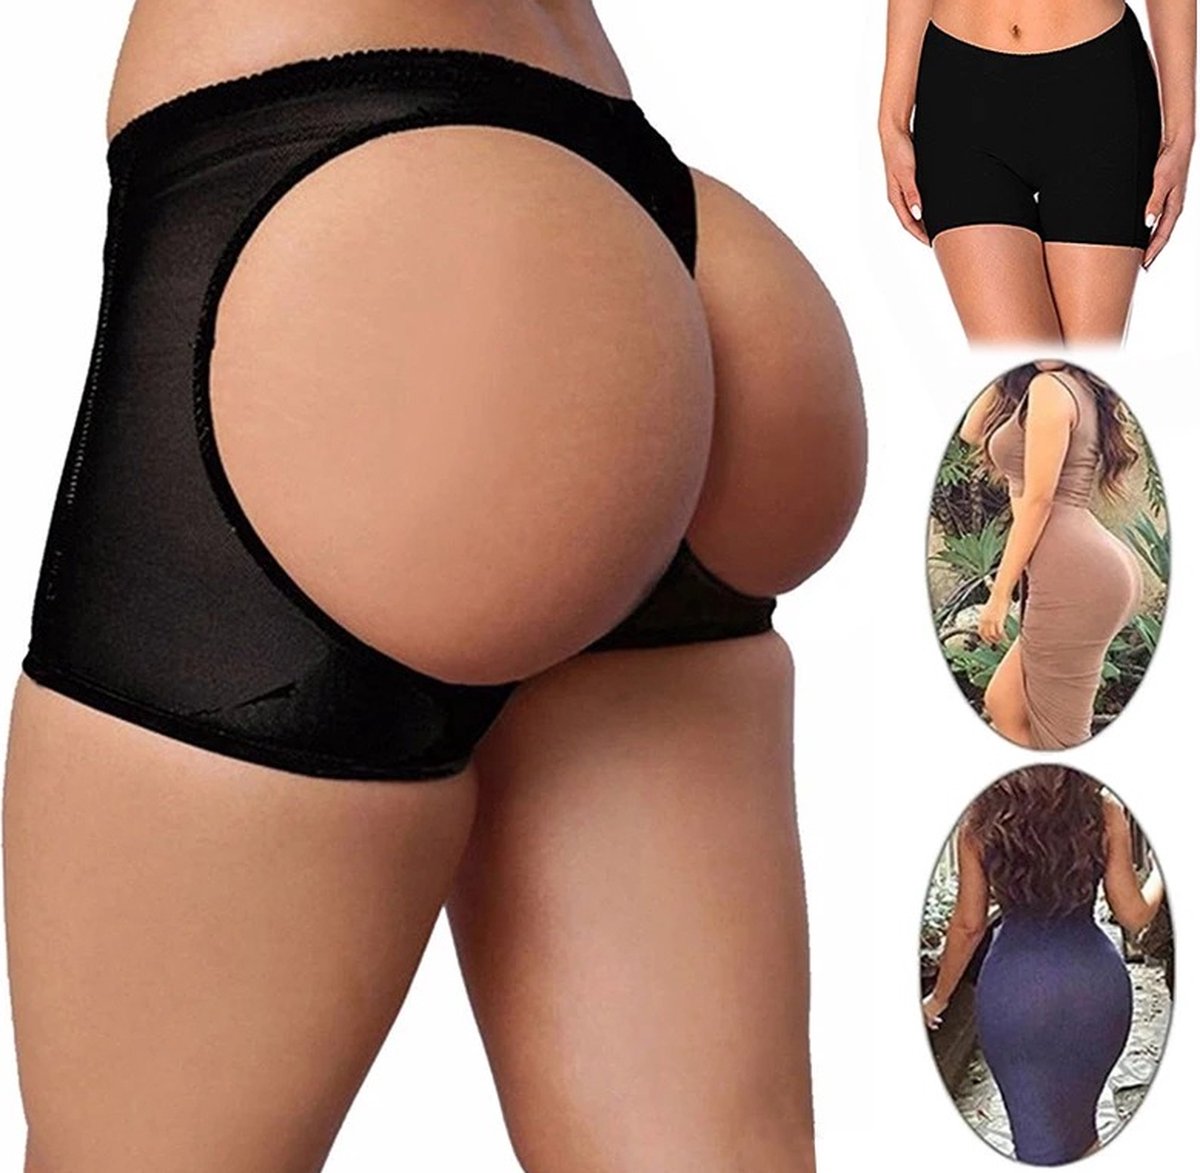 Butt Lifter - Butt lift onderbroek - Shapewear dames - Volle billen - Zwart - S